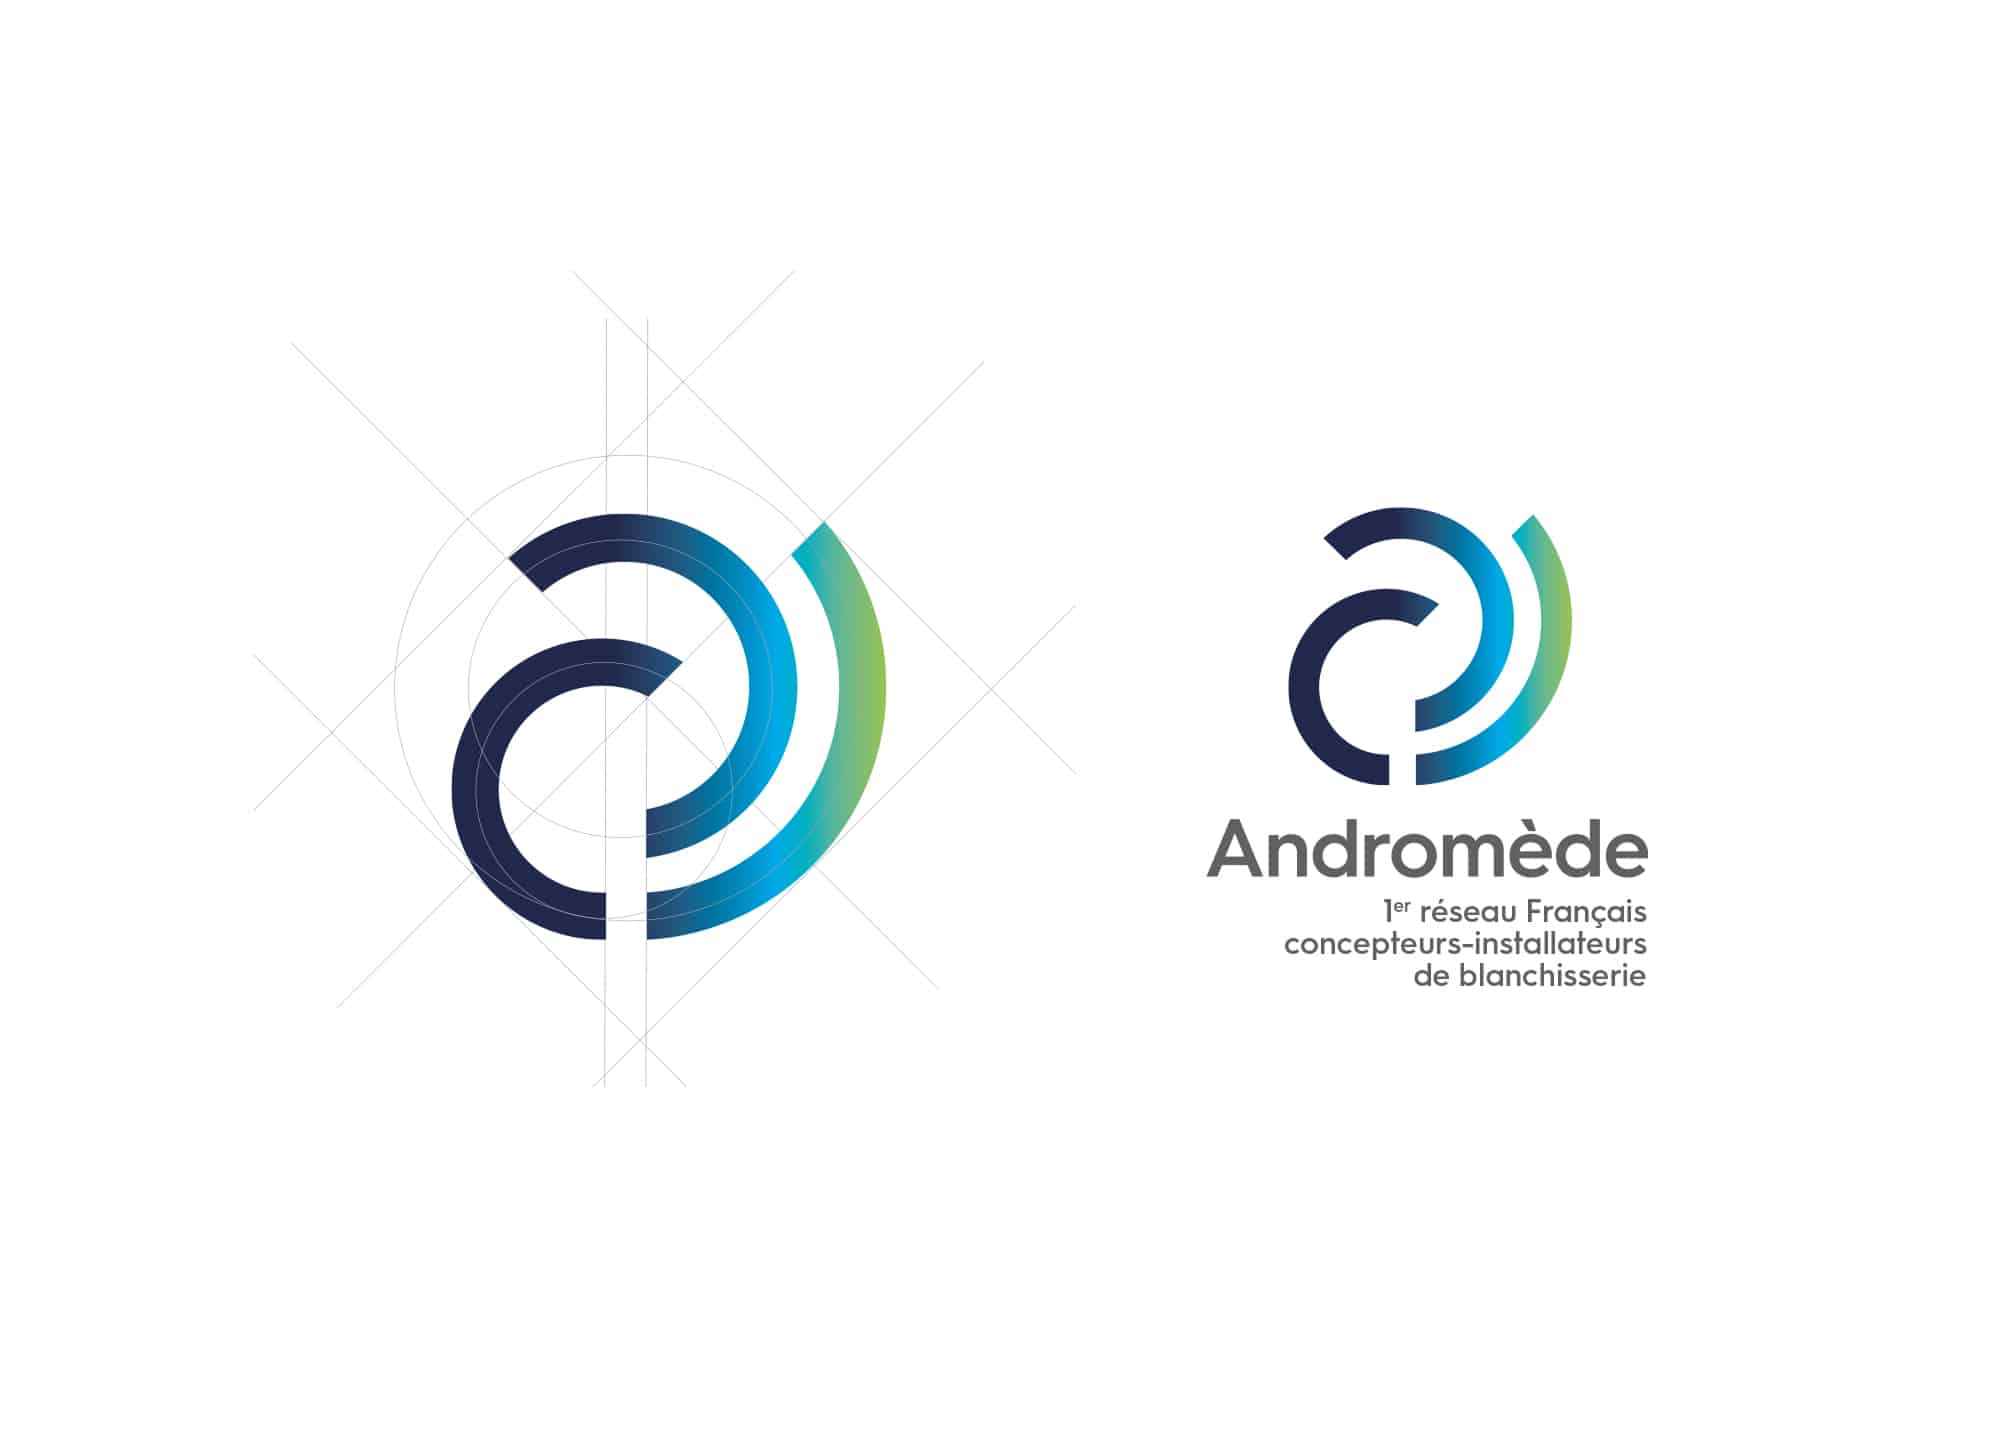 Création du logo de la marque Andromède. 1er réseau Français de concepteur-installateurs de blanchisserie. Création de logo Annecy